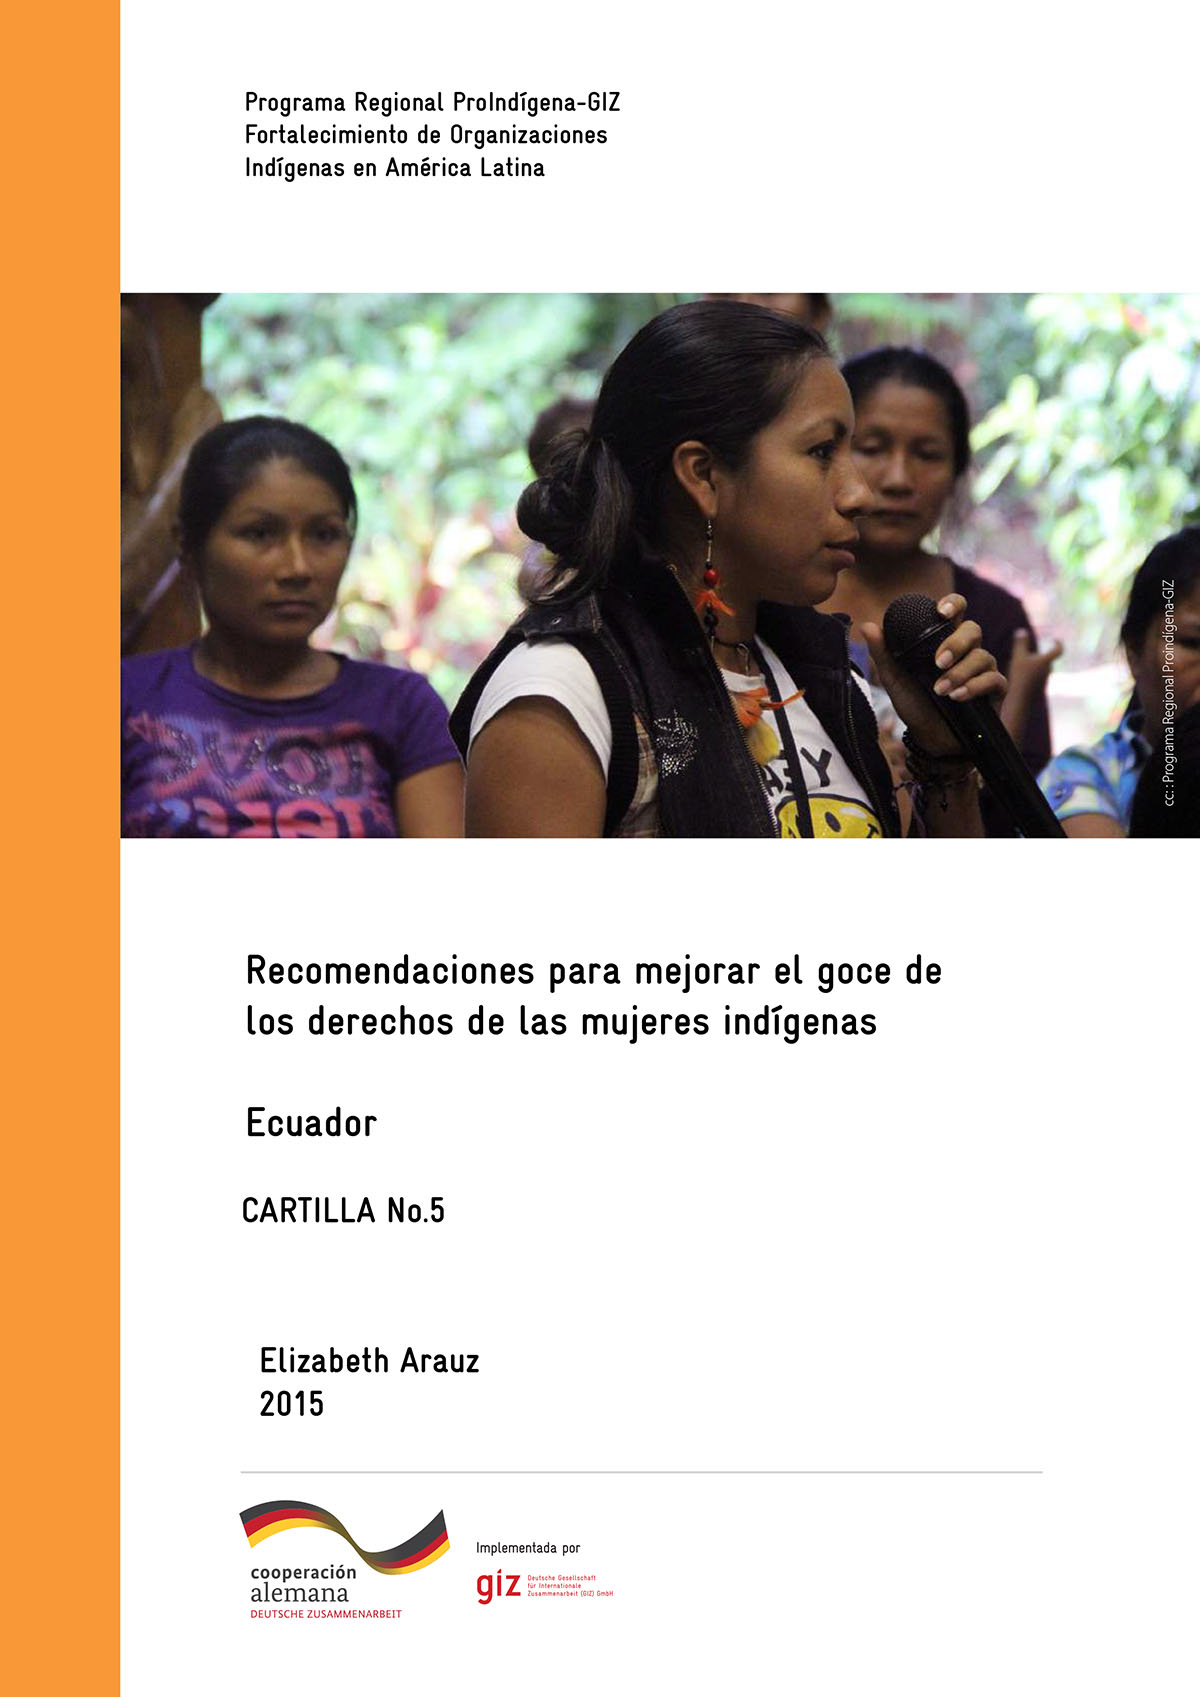 Arauz, Elizabeth <br>Recomendaciones para mejorar el goce de los derechos de las mujeres indígenas - Ecuador: cartilla No. 5<br/>Quito: Programa Regional ProIndígena-GIZ Ecuador. 2015. 35 páginas 